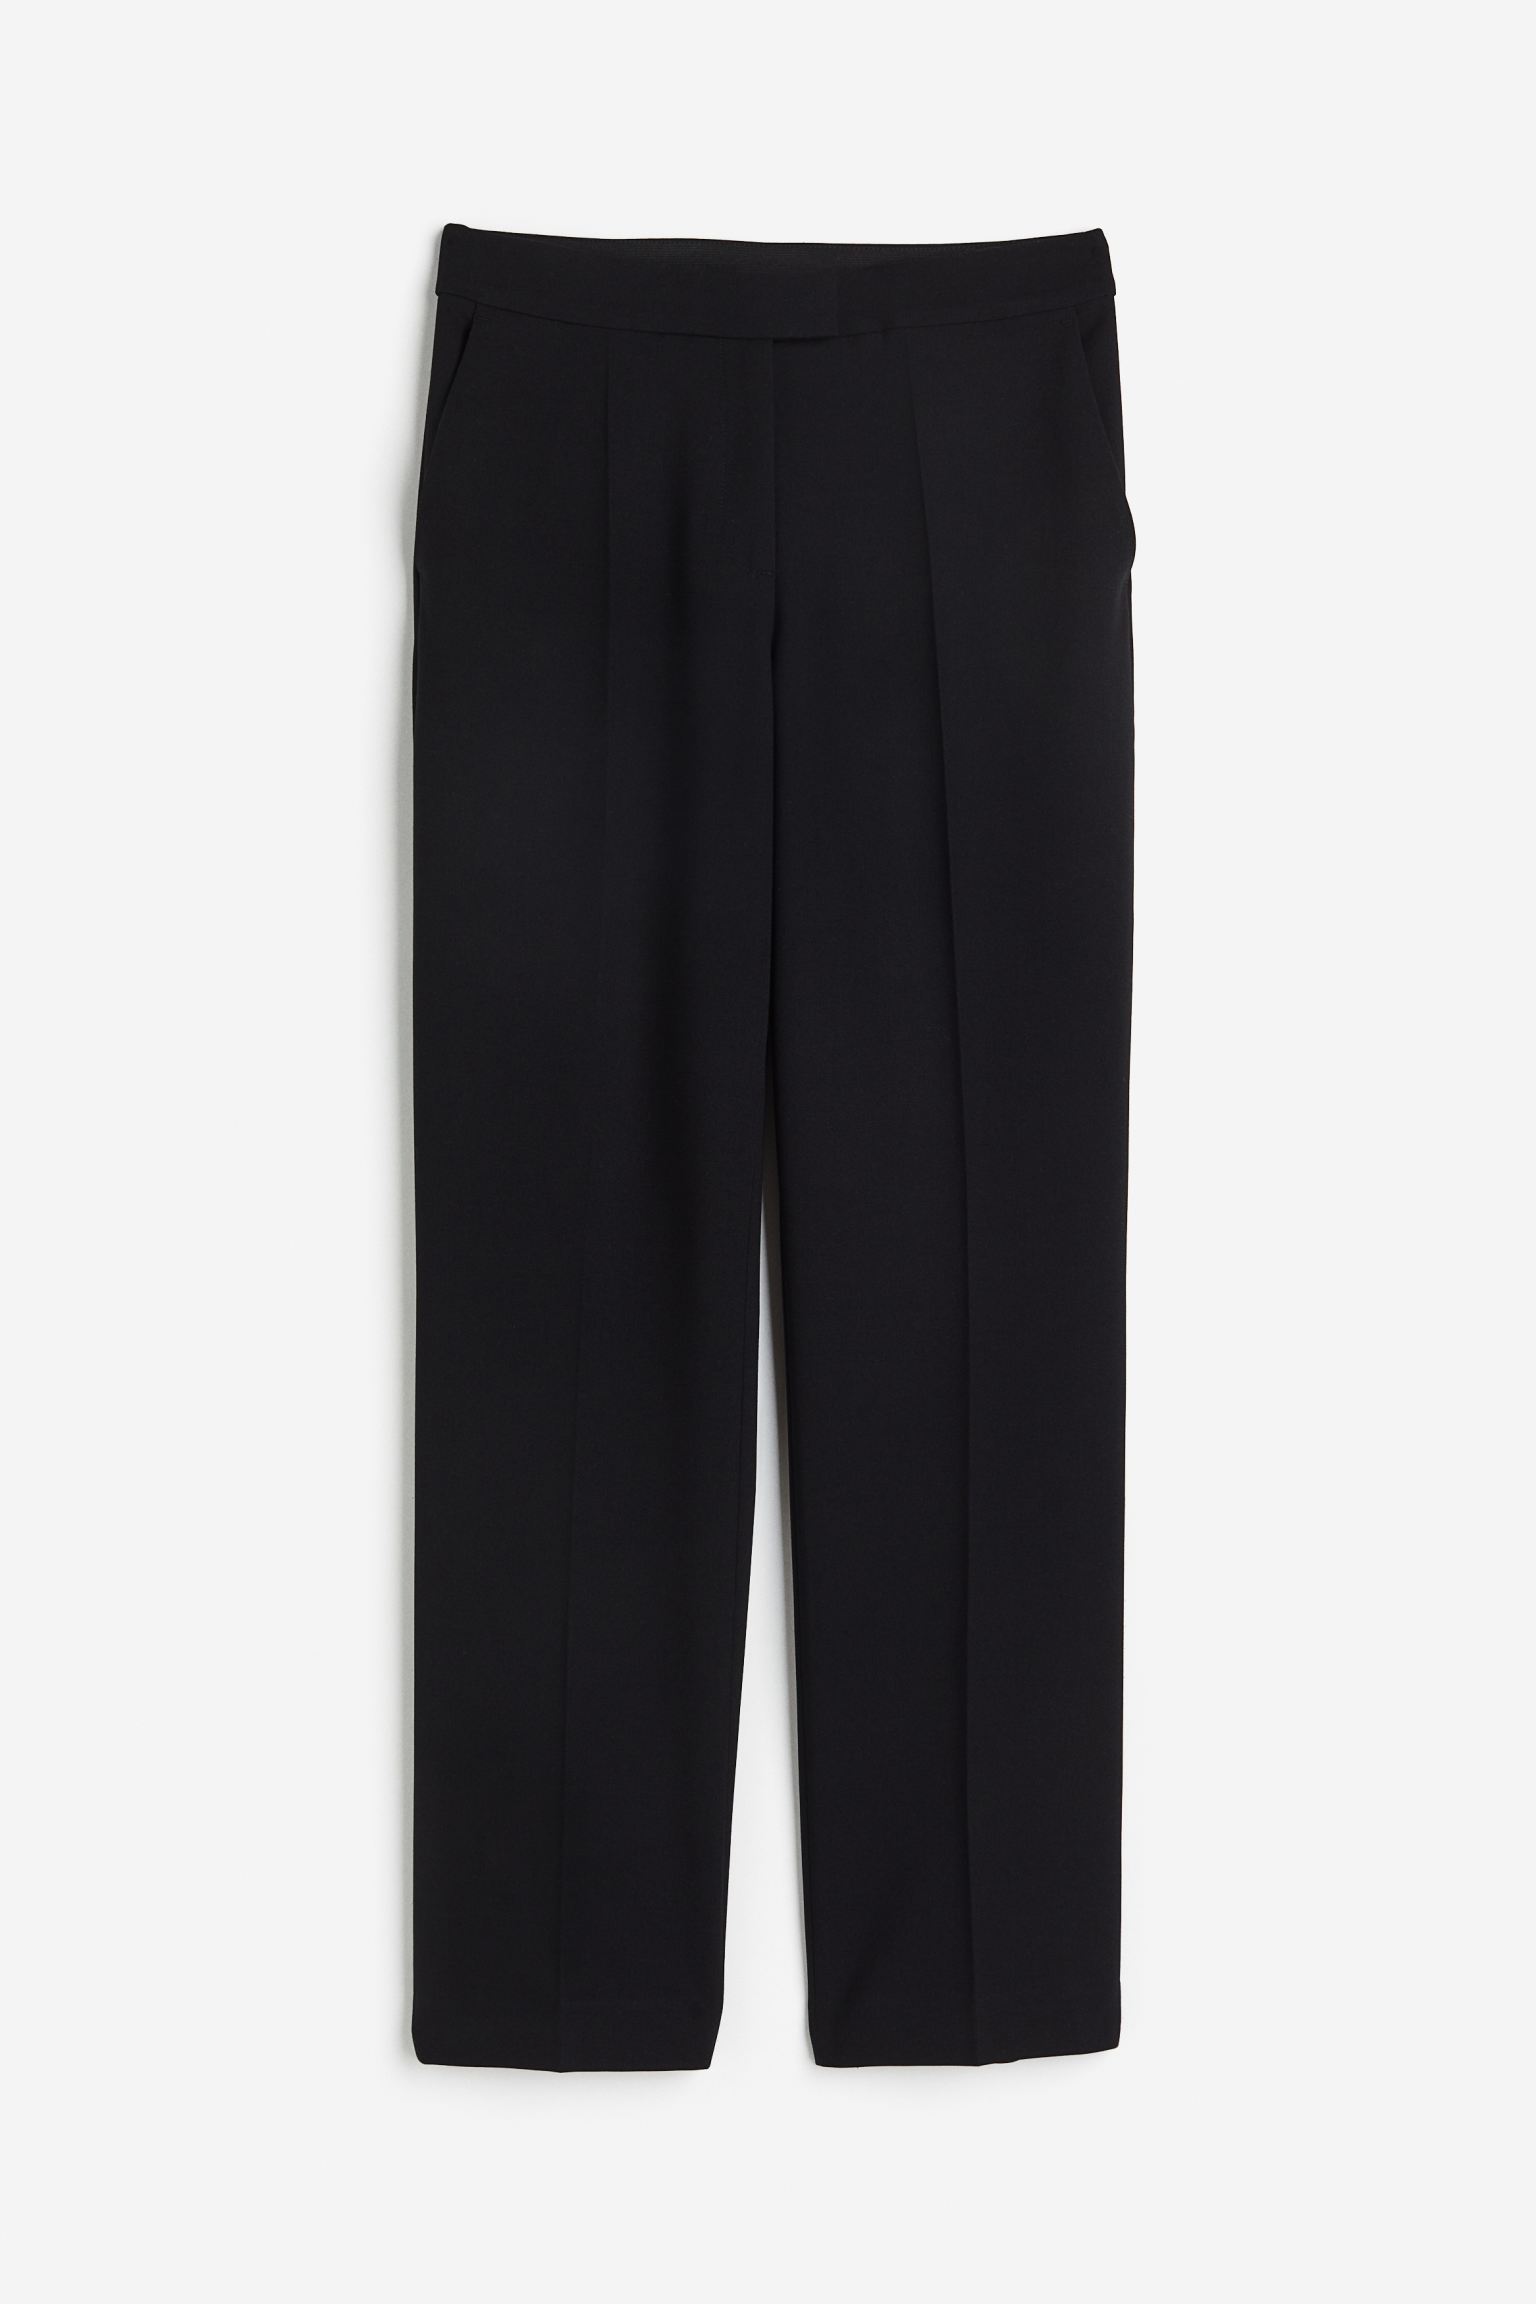 Брюки H&M Slim Satin, черный узкие брюки со складками спереди fransa curve stretch коричневый